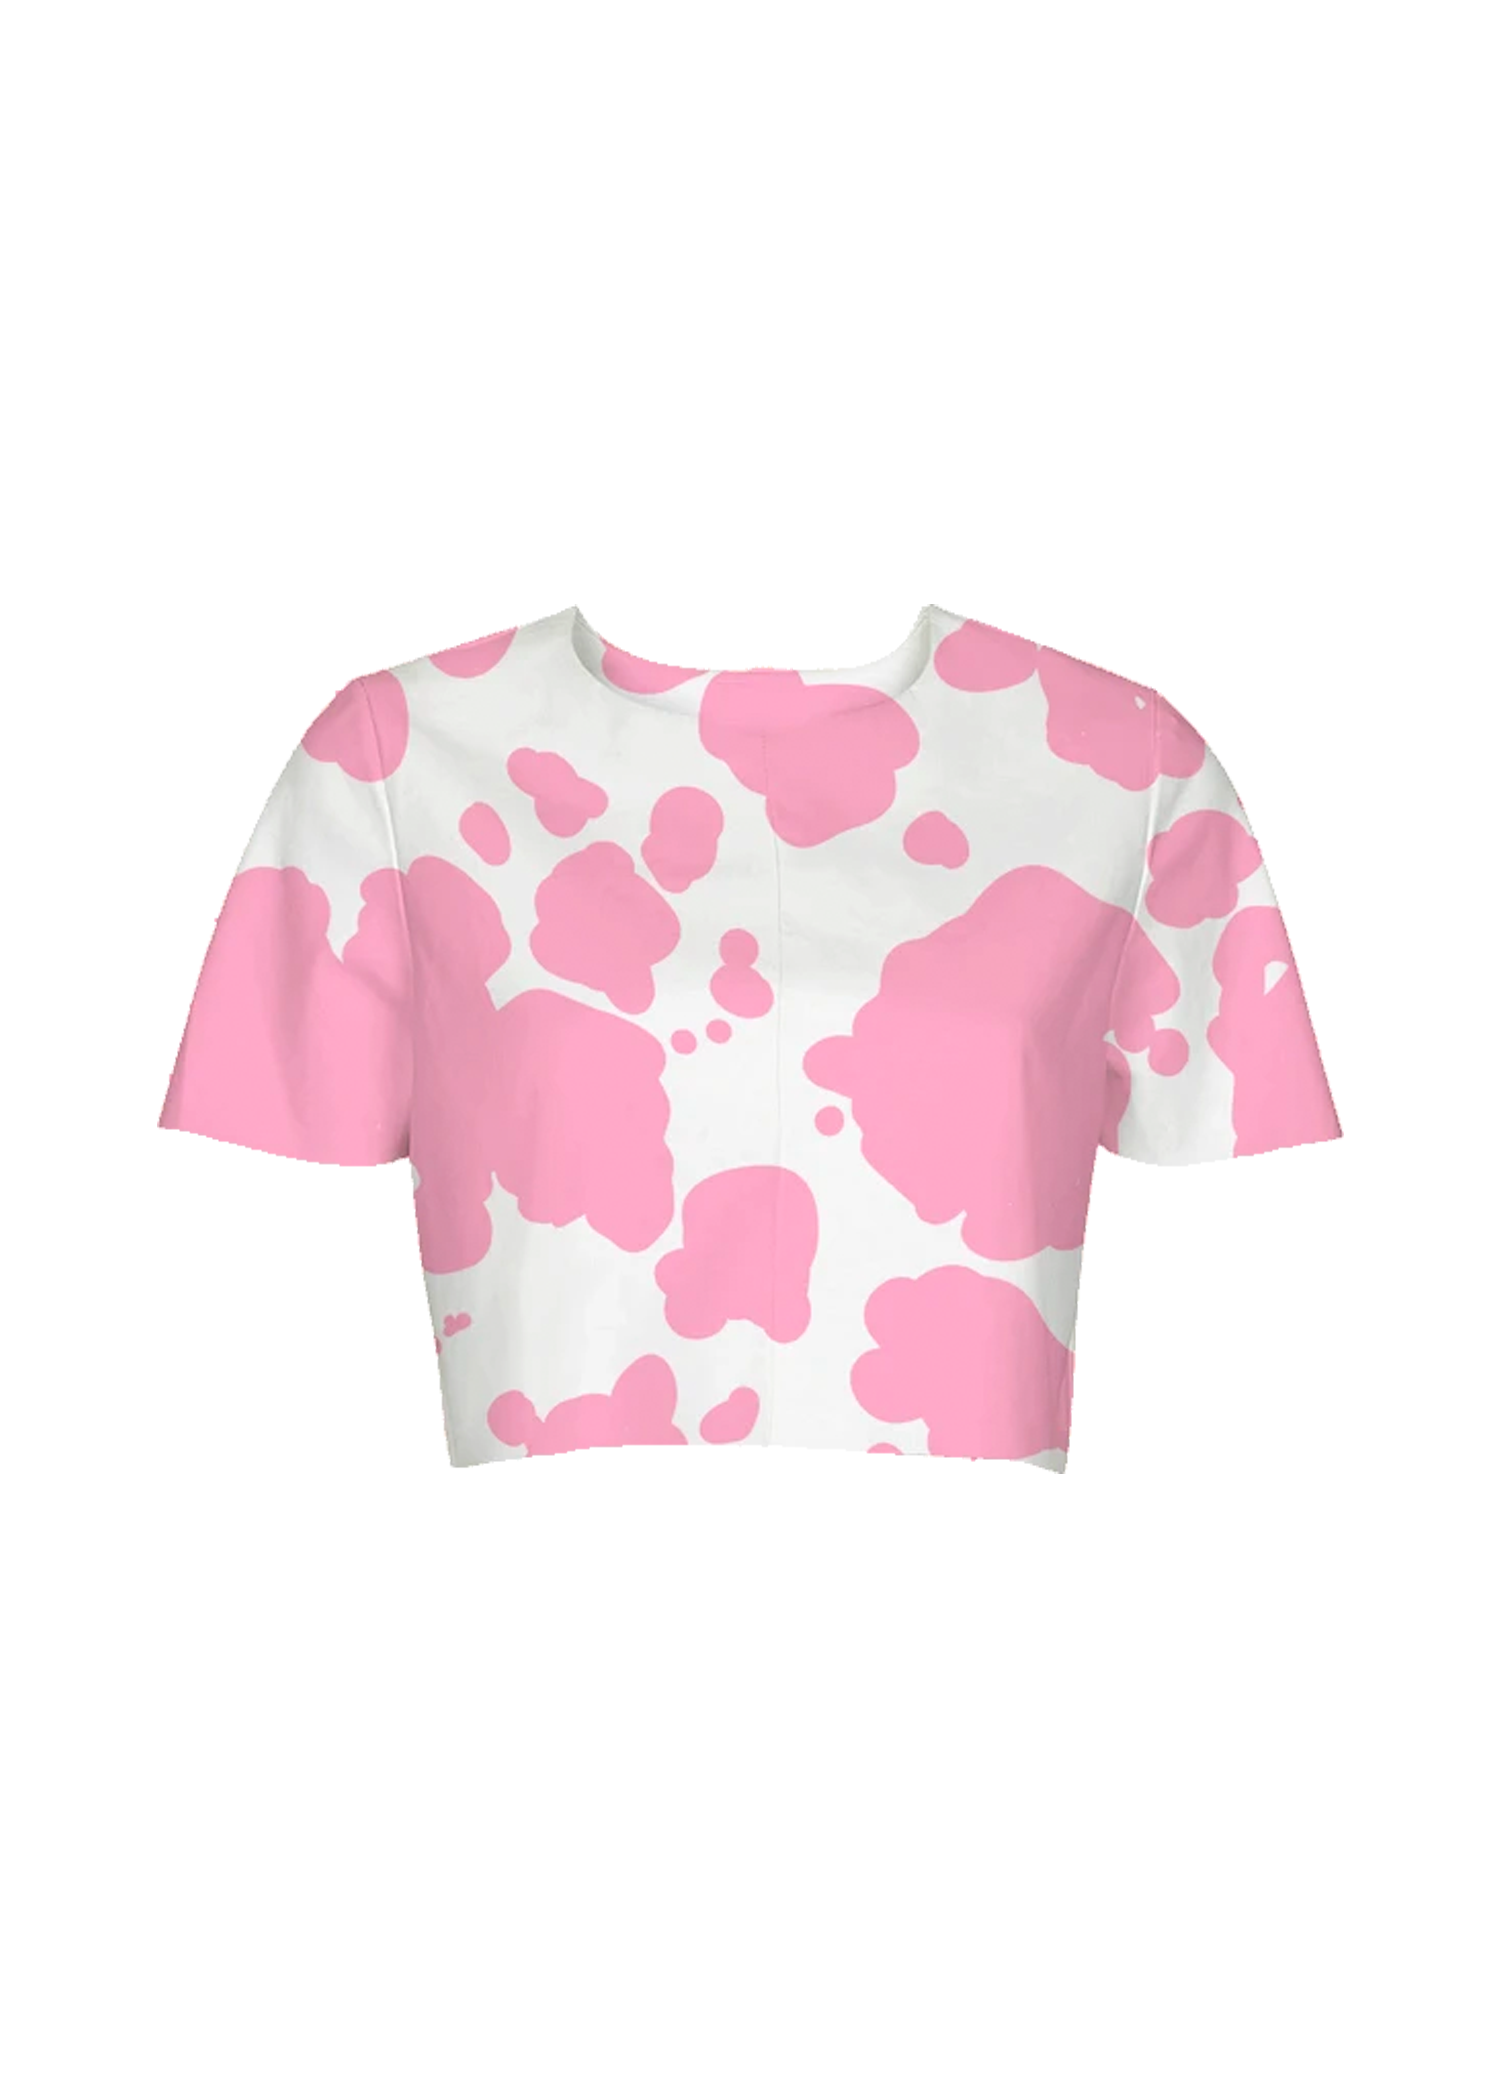 S pink cow print crop top - Trash Queen